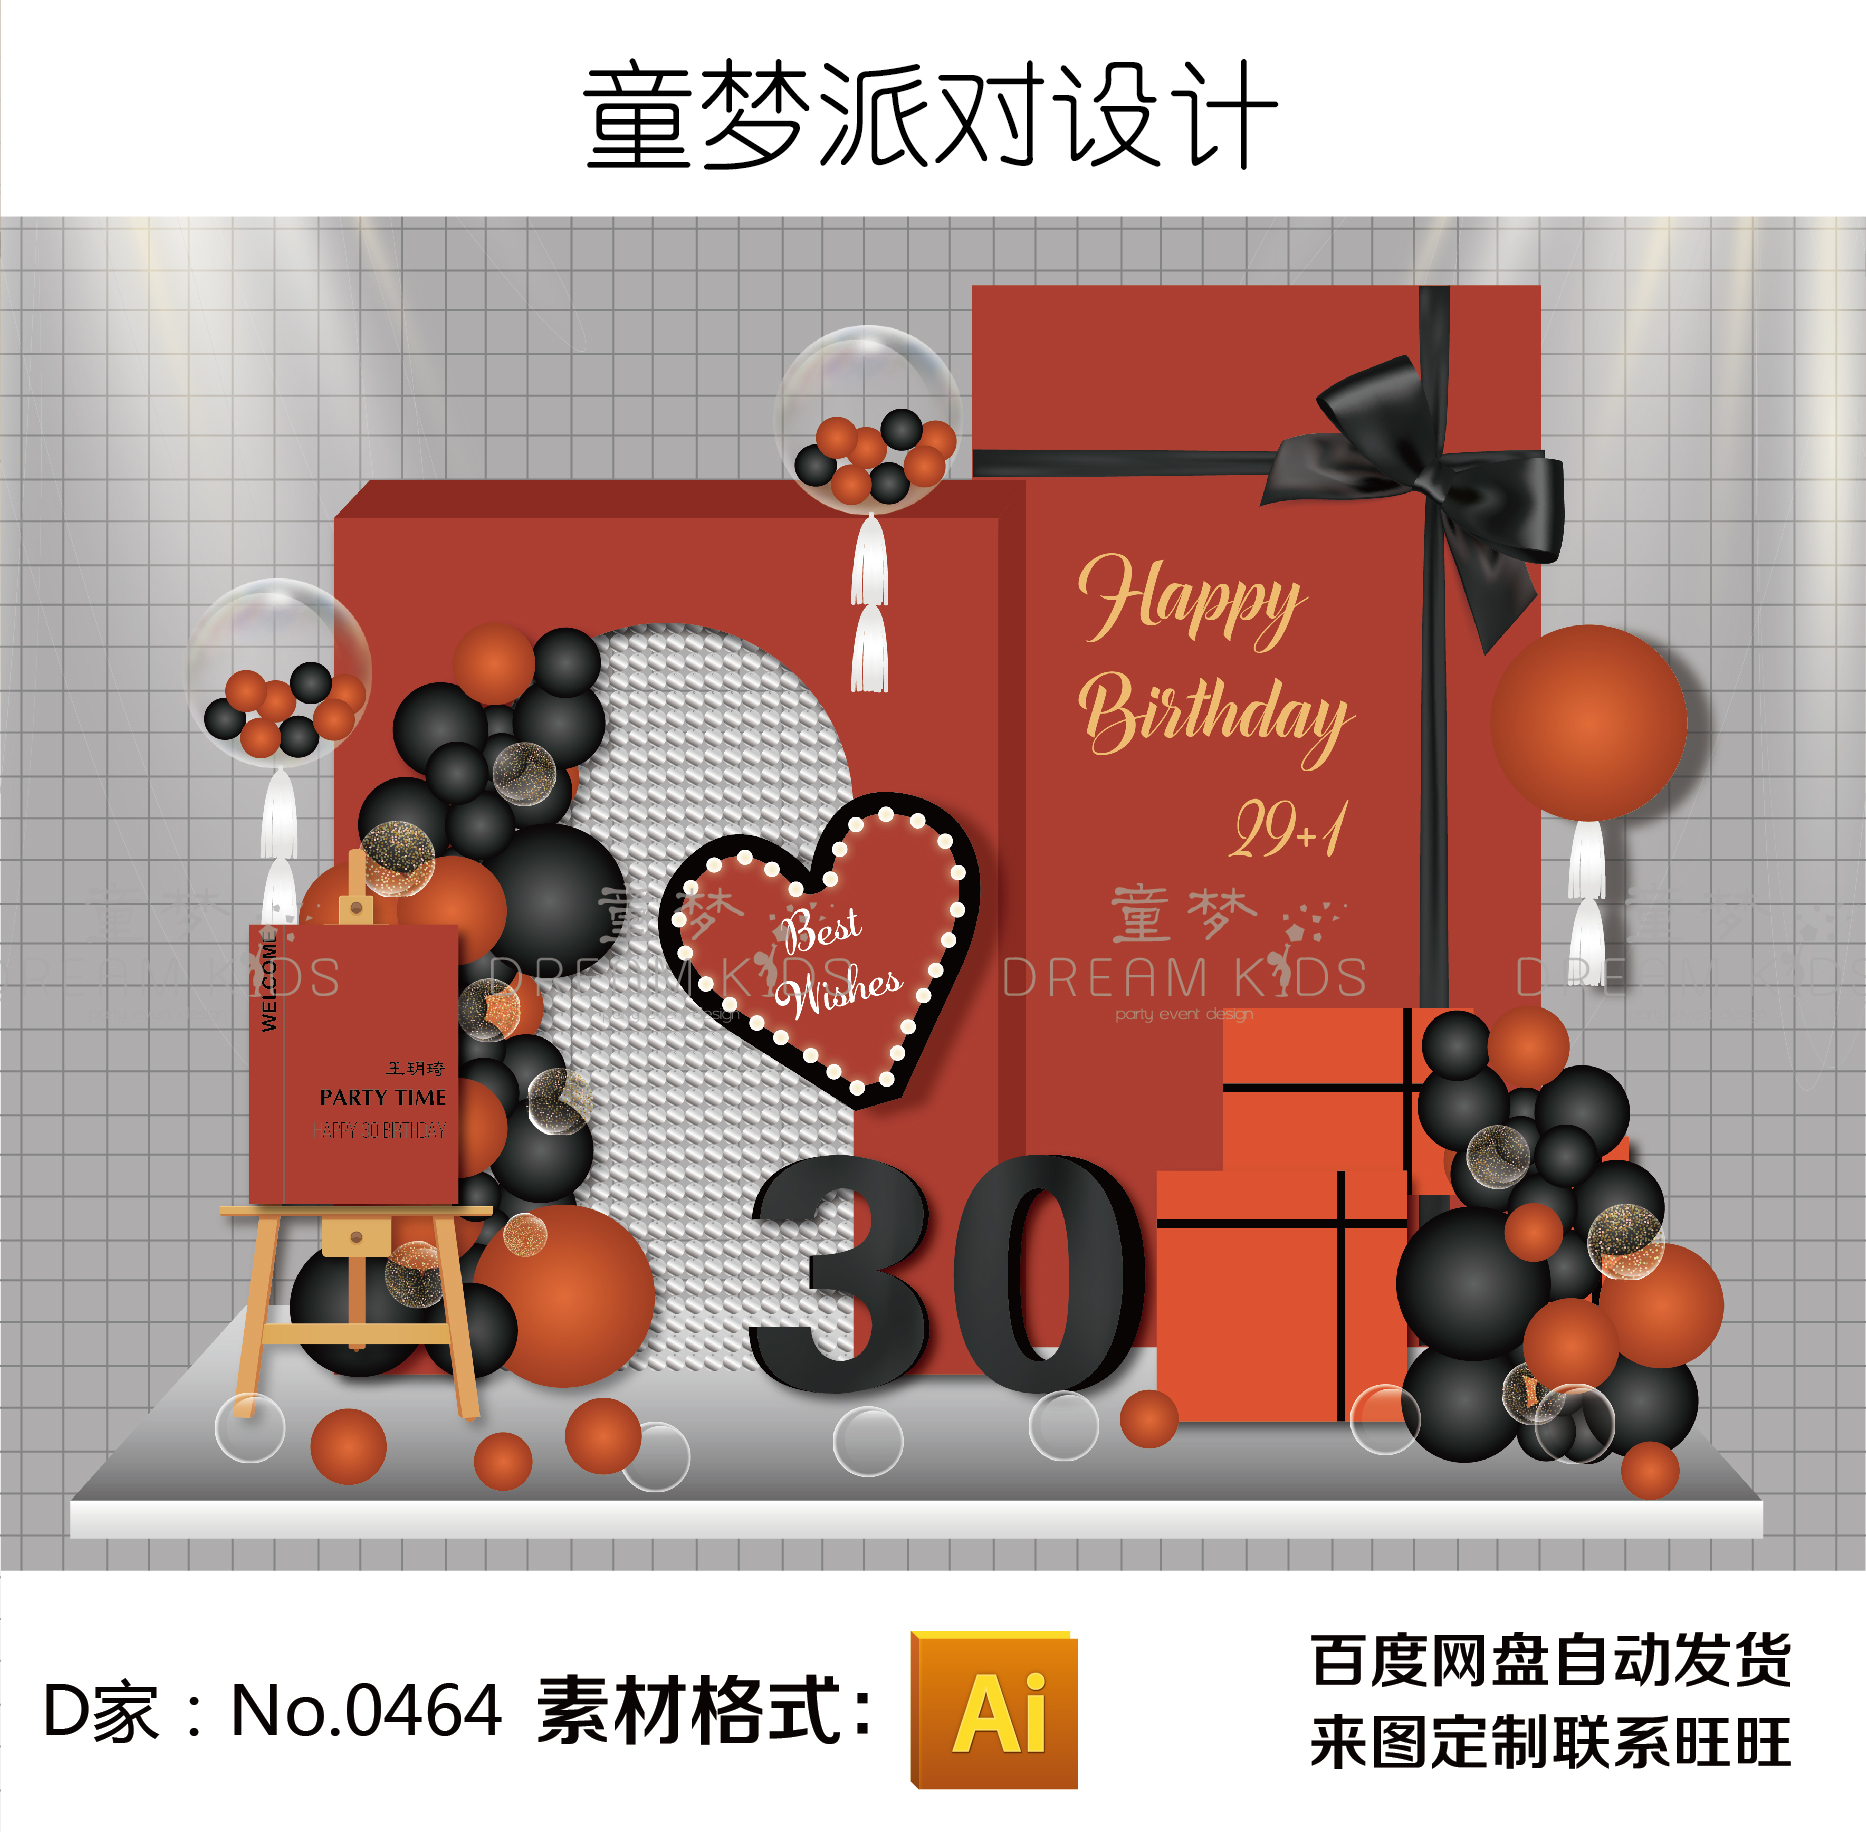 橙黑色风动片气球礼物盒蝴蝶结主题30岁生日派对宴背景设计素材